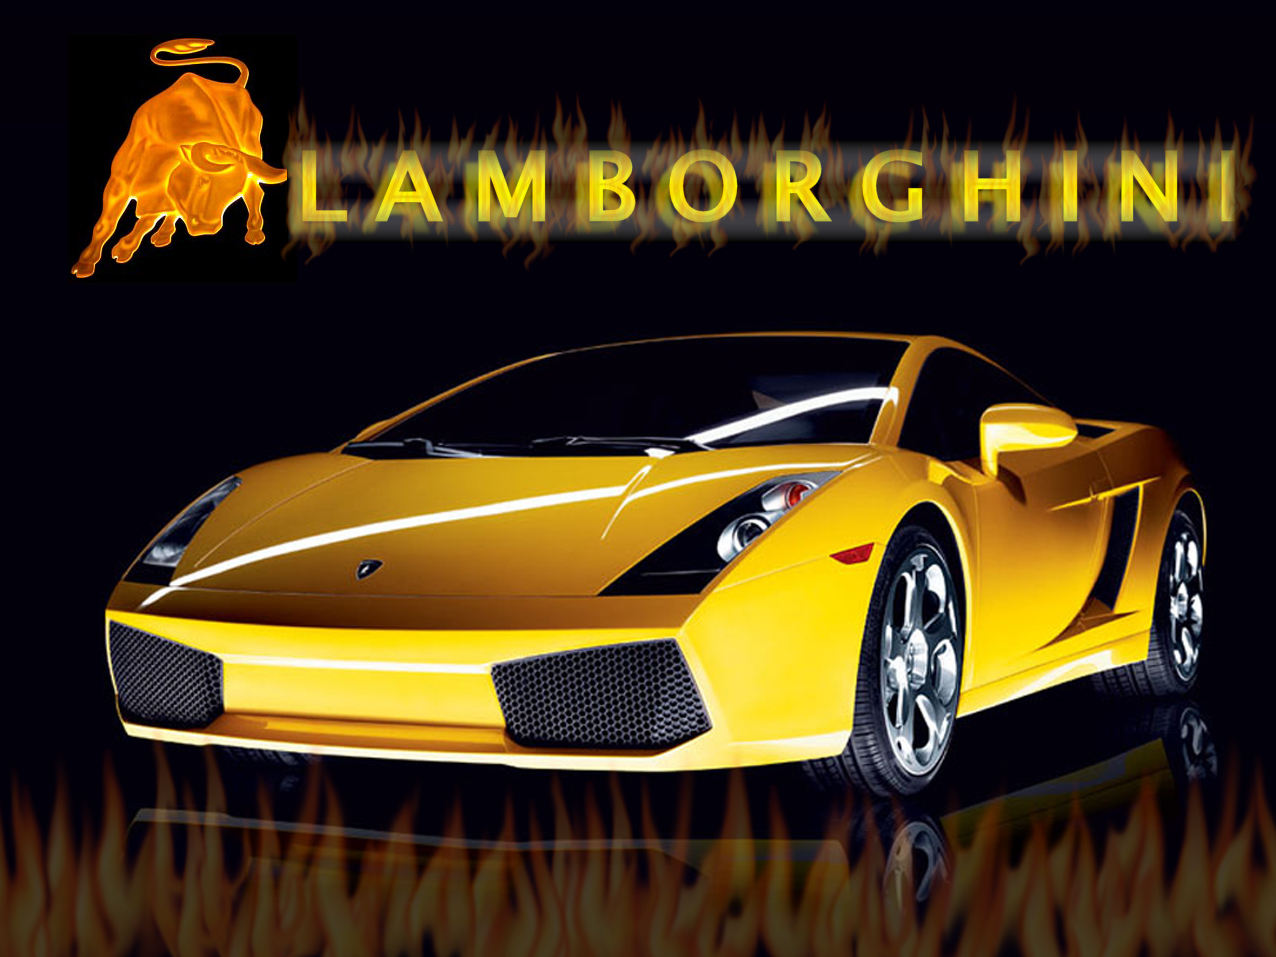 Lamborghini wallpapers download